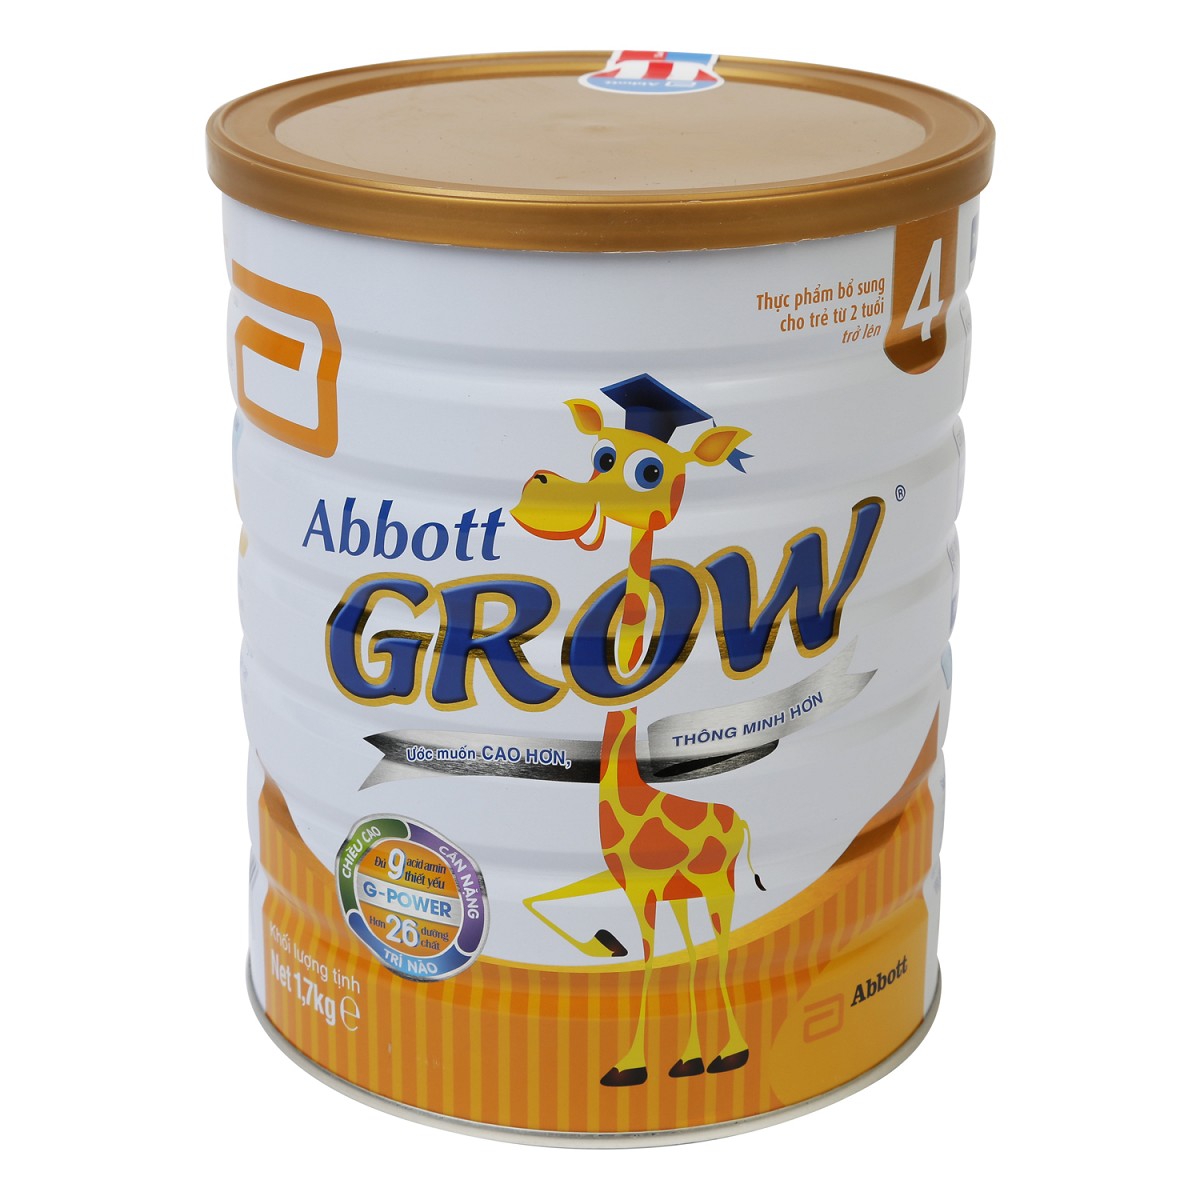 Sữa Abbott Grow 4 hương vani 1.7kg